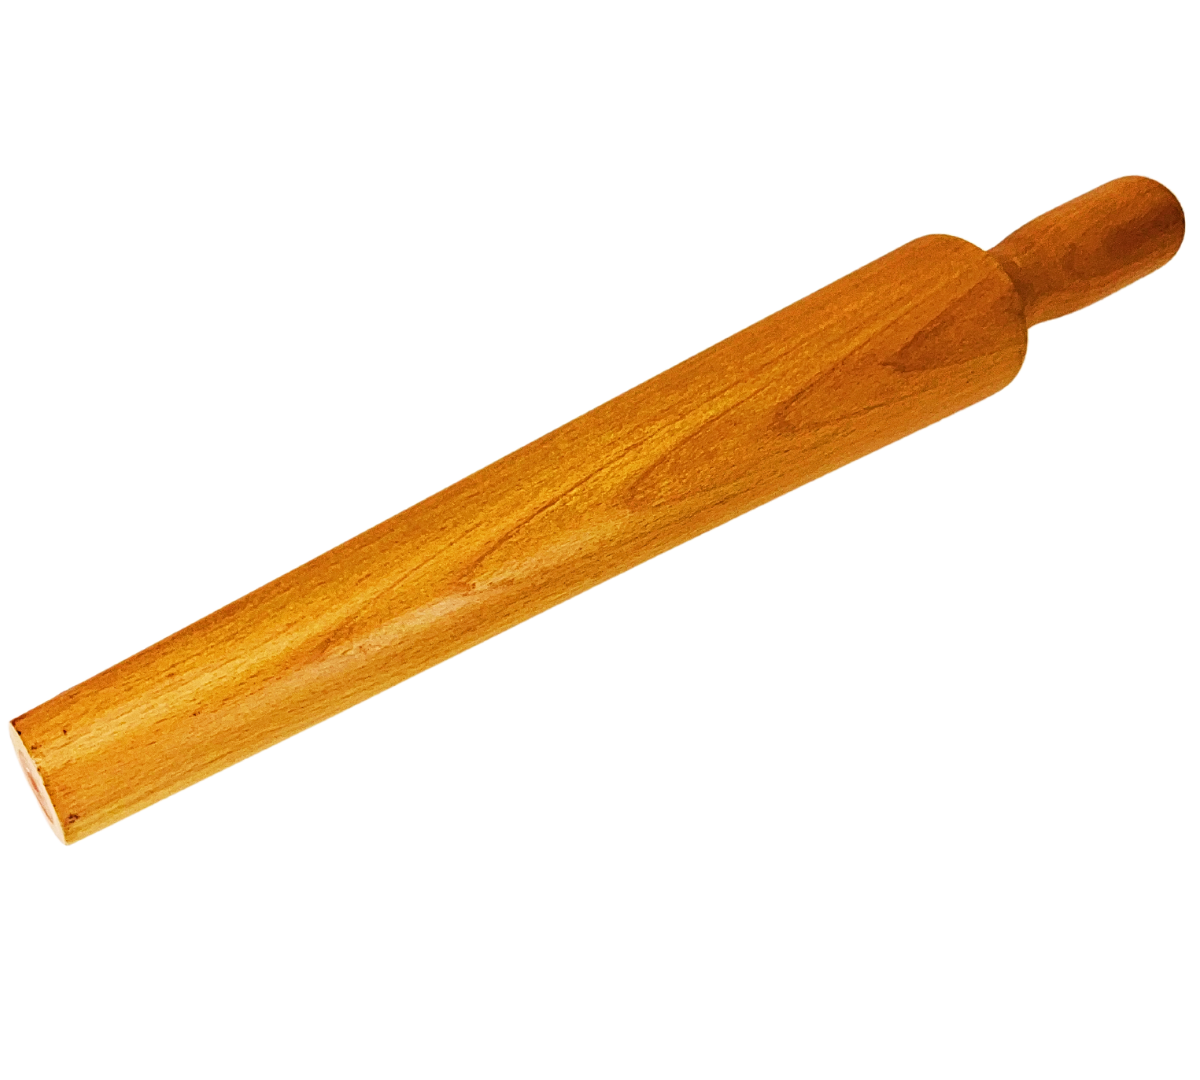 Bracelet Mandrel | 20" (50.8 cm) Solid Hardwood | 5" (12.7 cm) Easy Grip Handle | Tapered 2.75" (7 cm) to 1.5" (3.8 cm) Working Area - TJ-17117